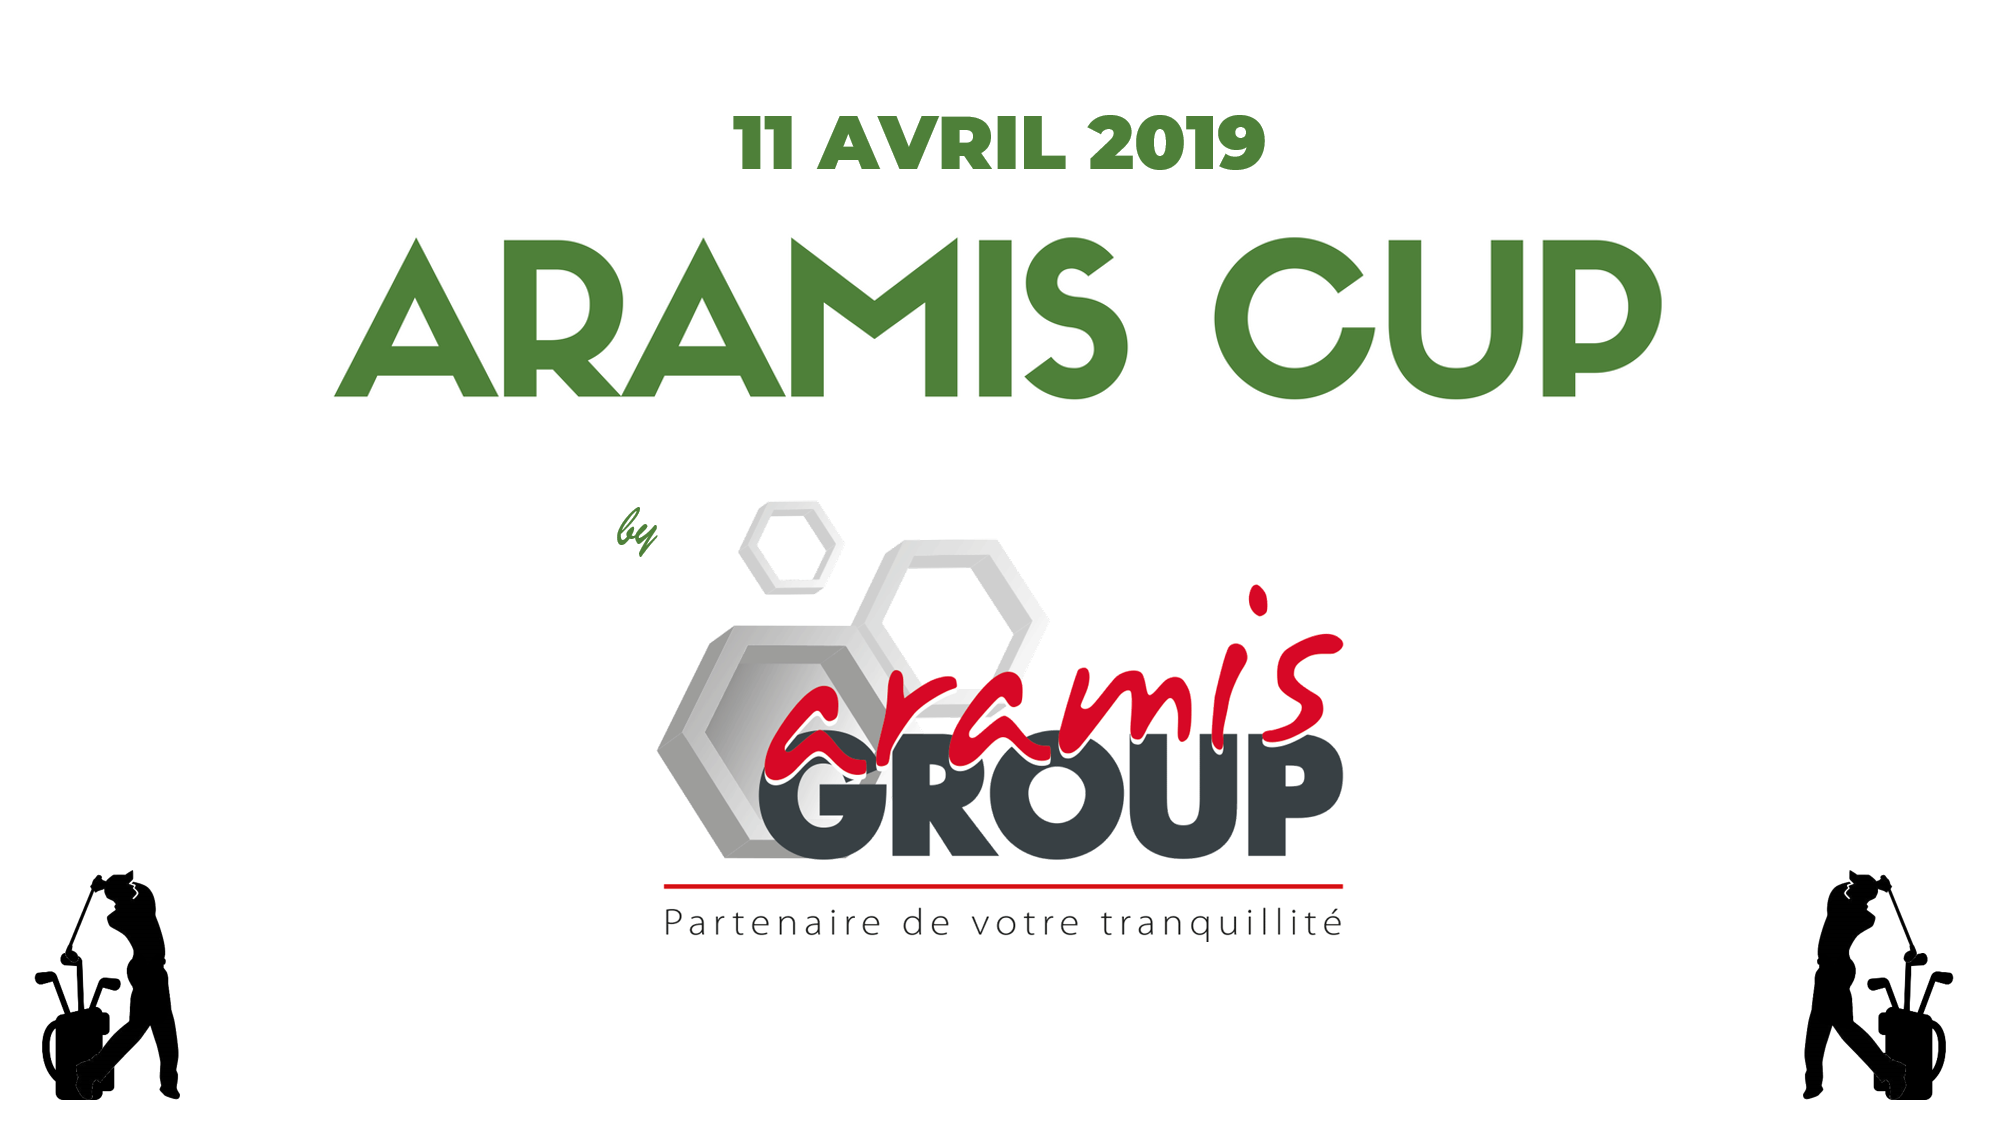 Aramis CUP par Aramis Group, 11 avril 2019